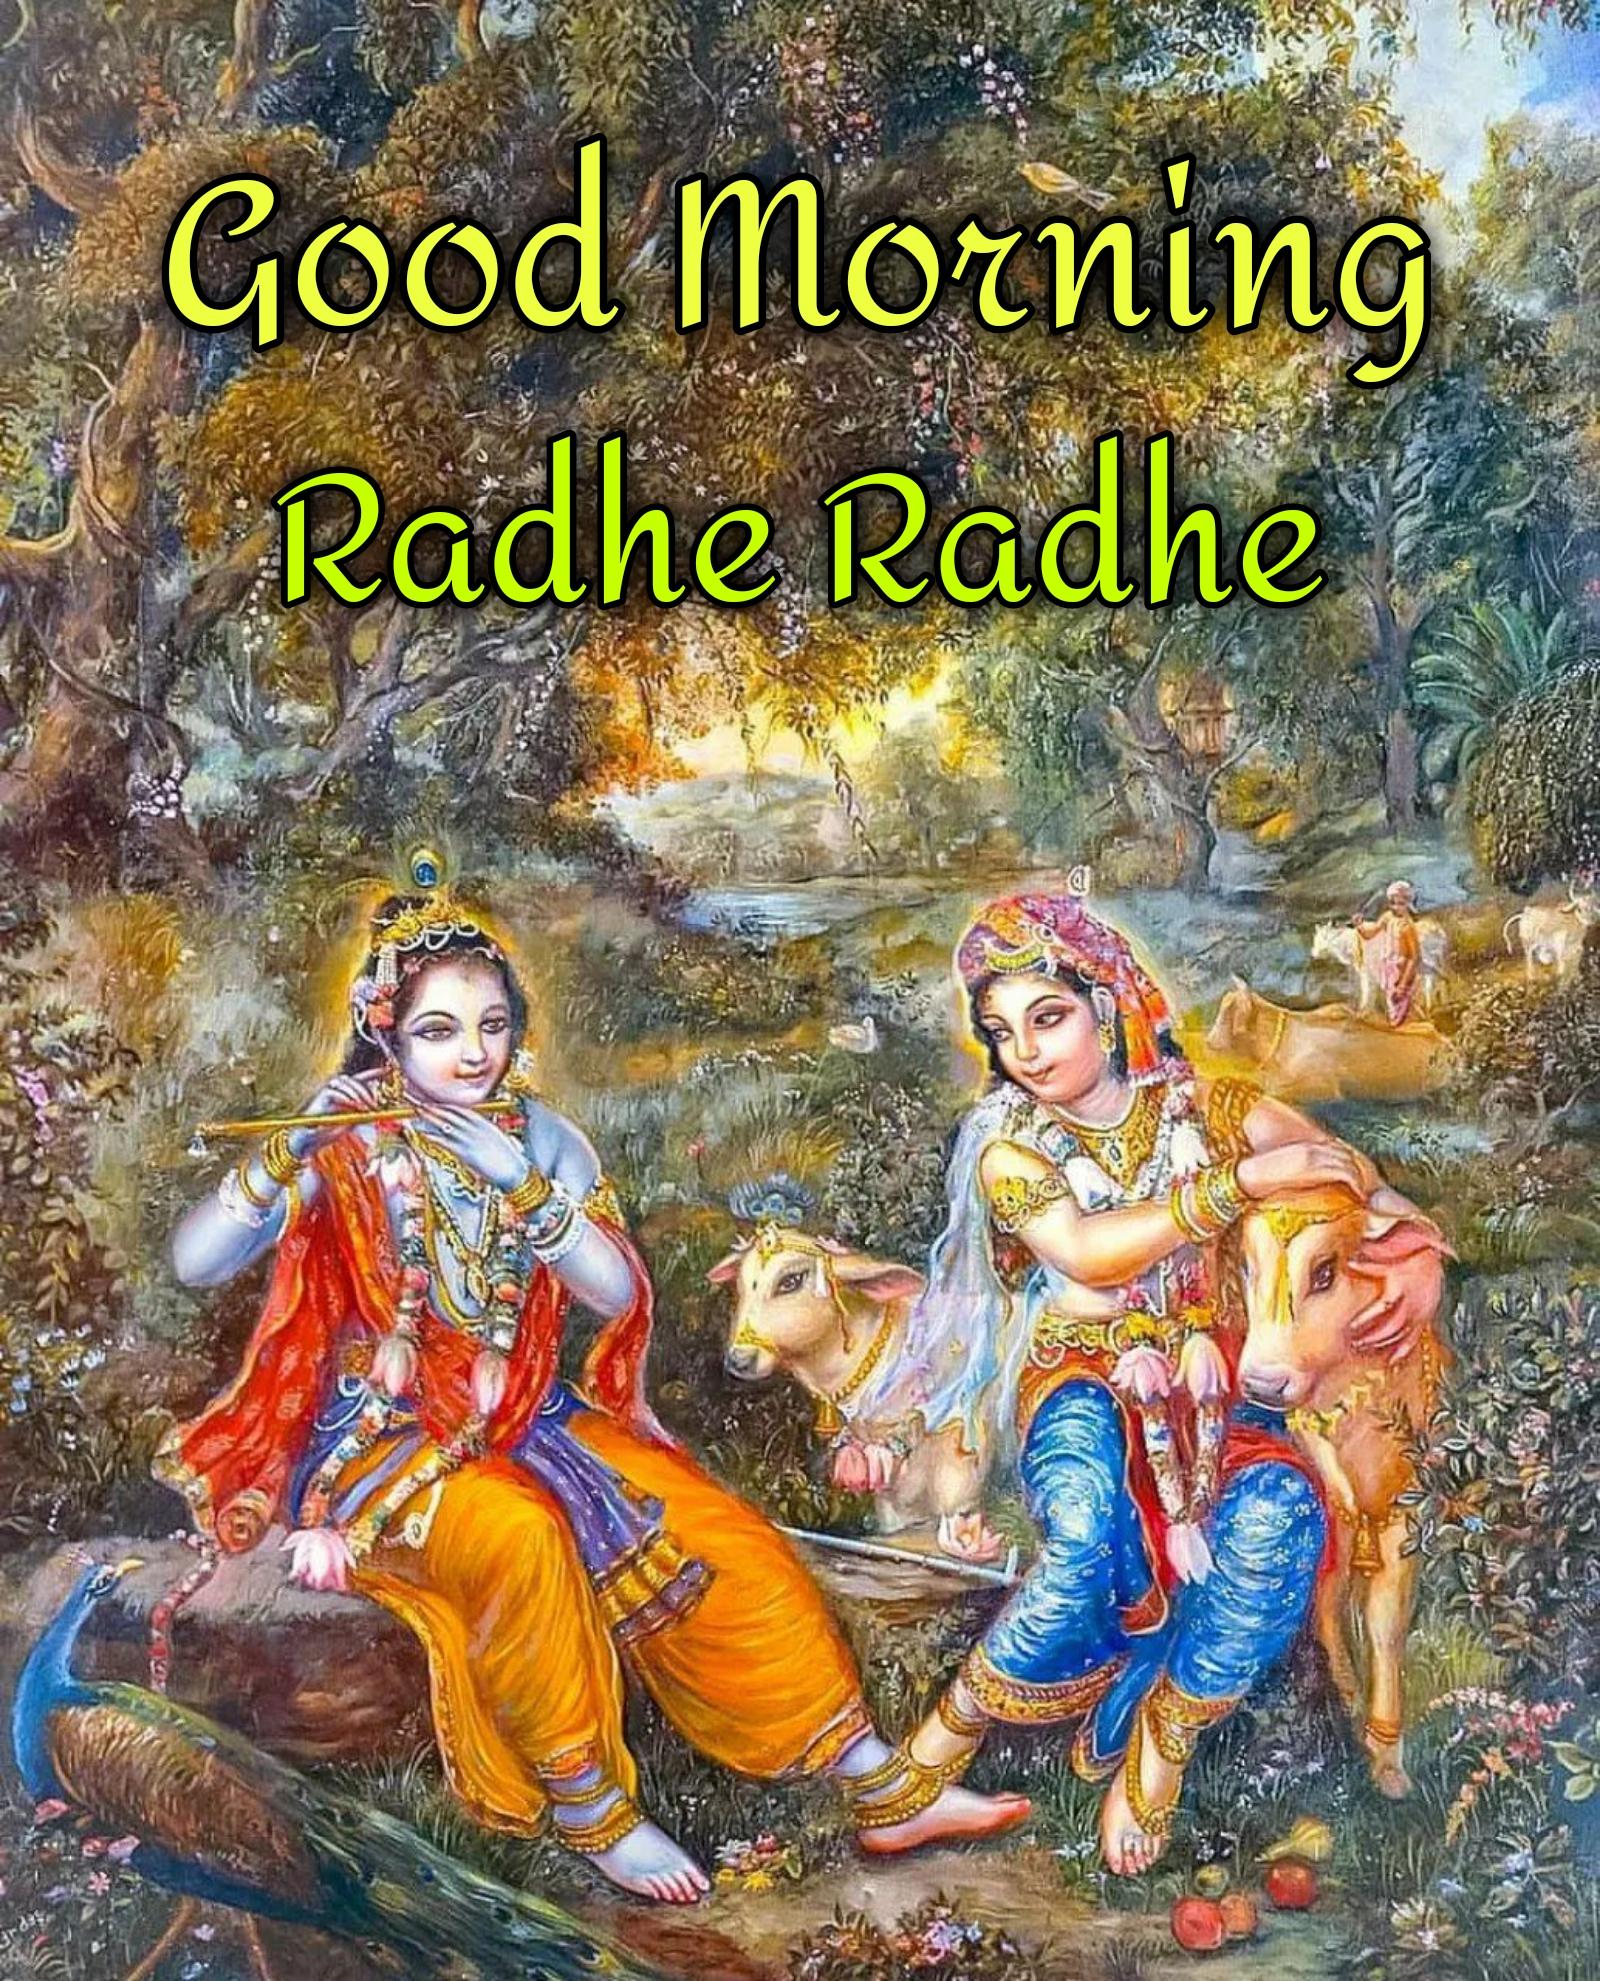 Good Morning Radhe Radhe Images - ShayariMaza